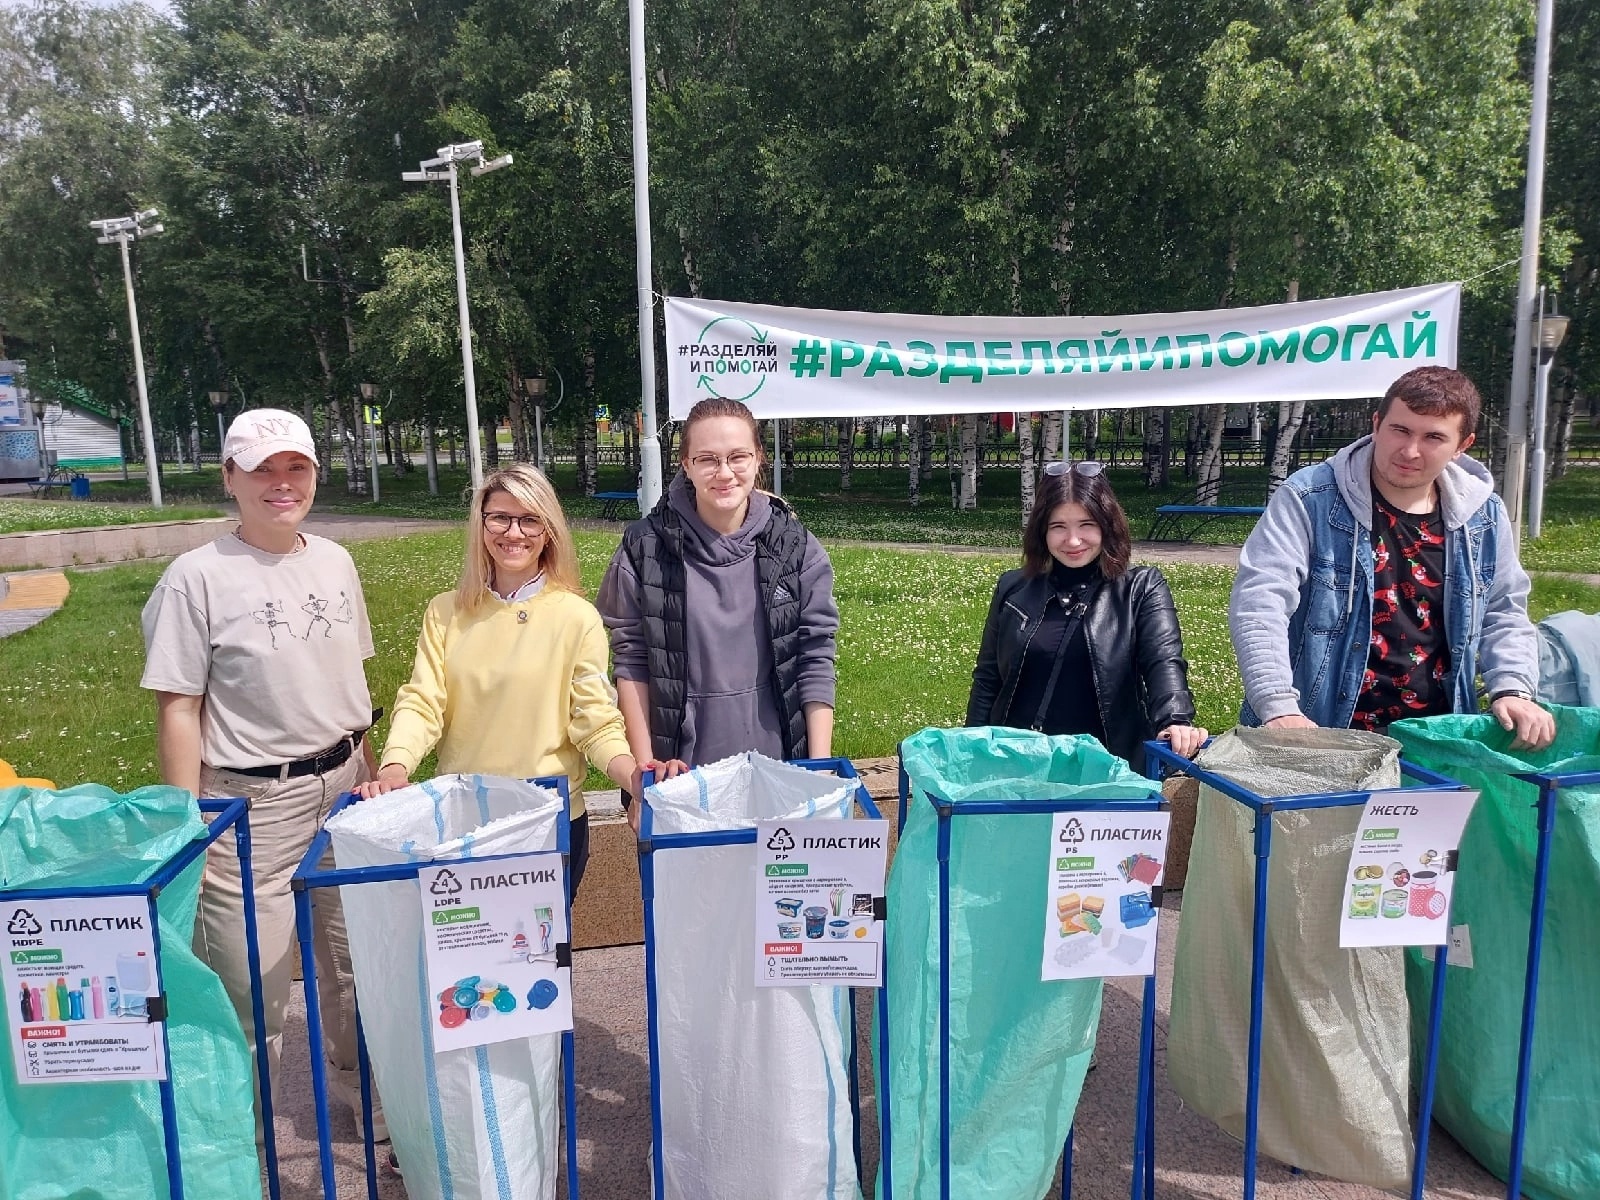 Эко-активисты Нижневартовска приглашают горожан принять участие в акции «Разделяй и помогай»